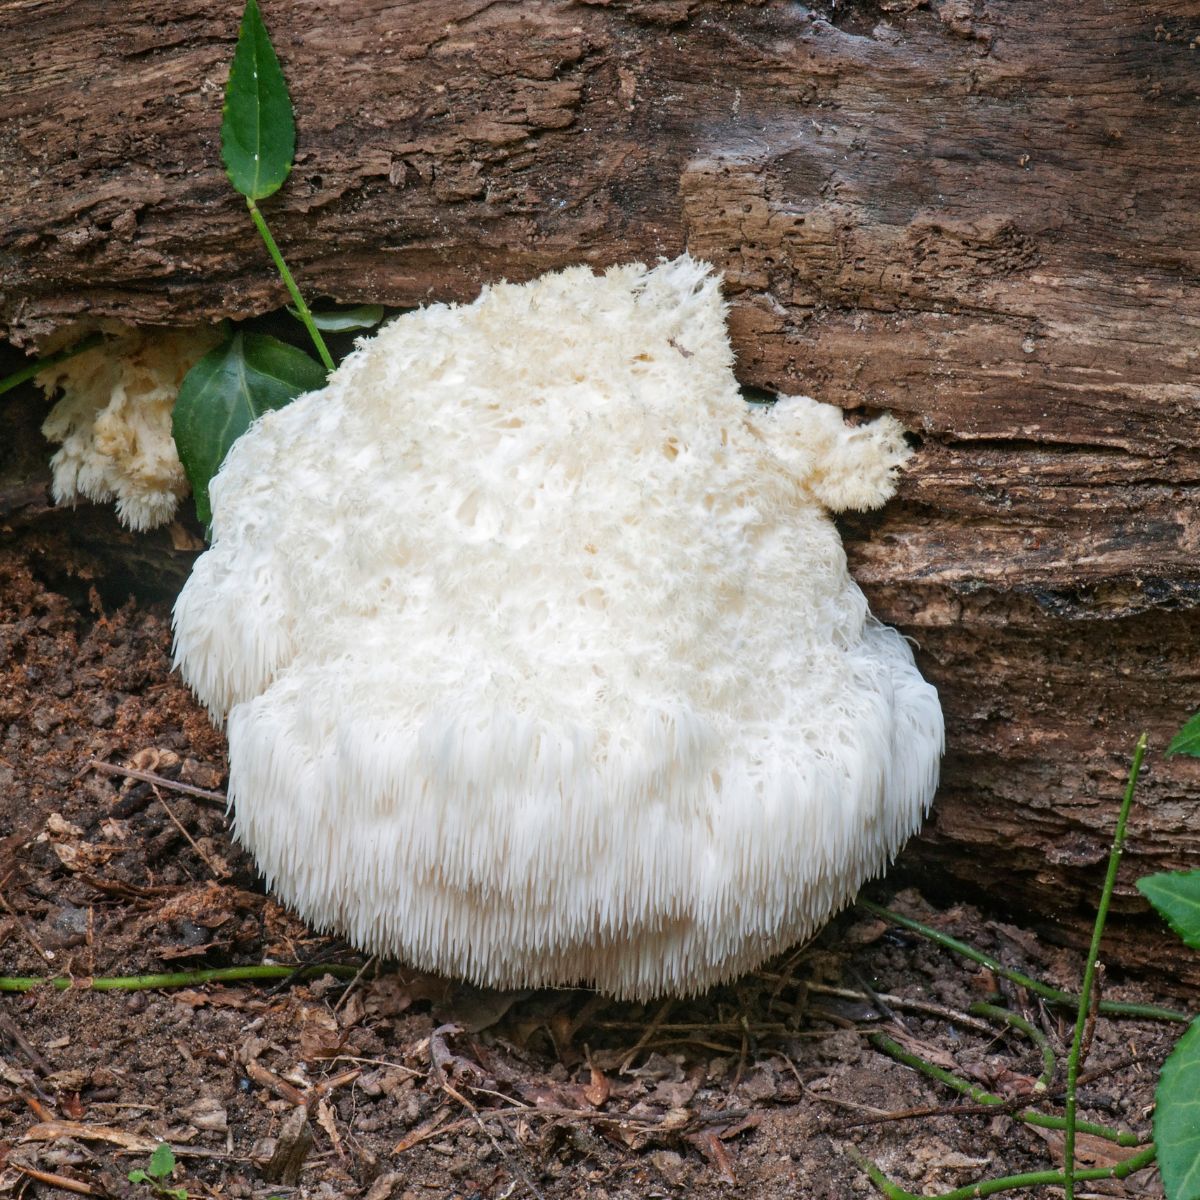 hericium mushroom